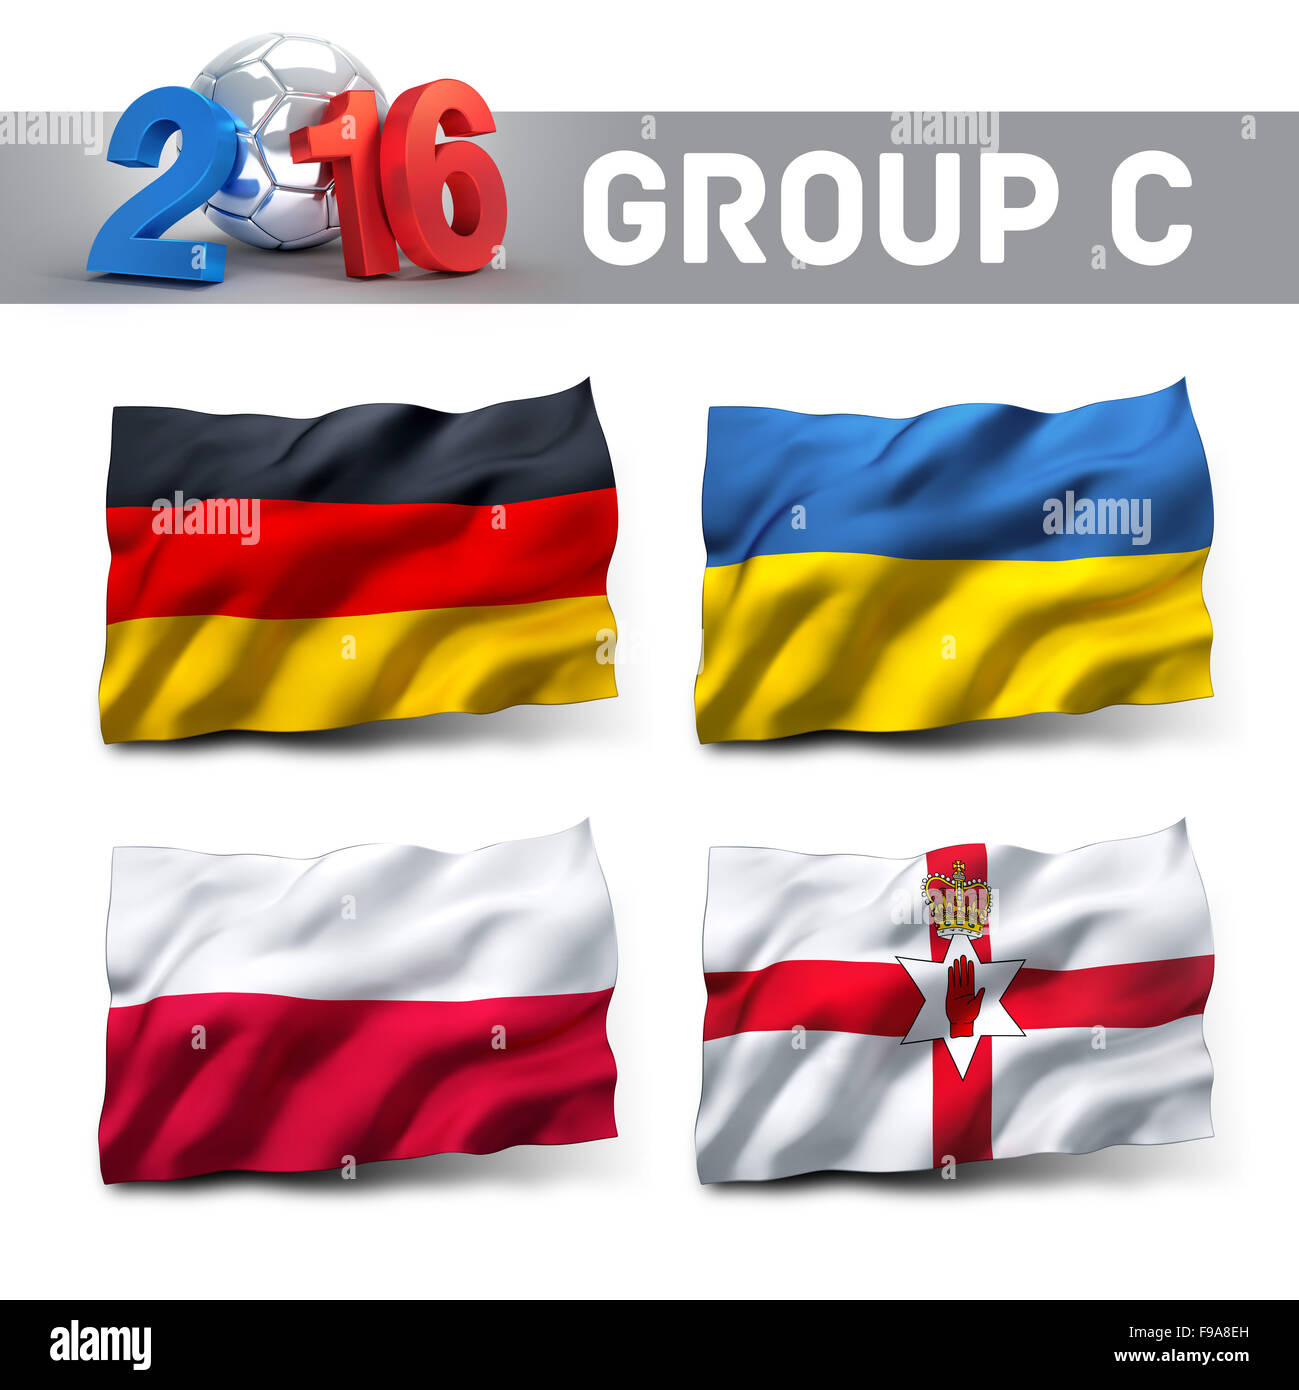 Frankreich 2016 Qualifikation Gruppe C mit Team-Flaggen. Fußball-Wettbewerb. Stockfoto